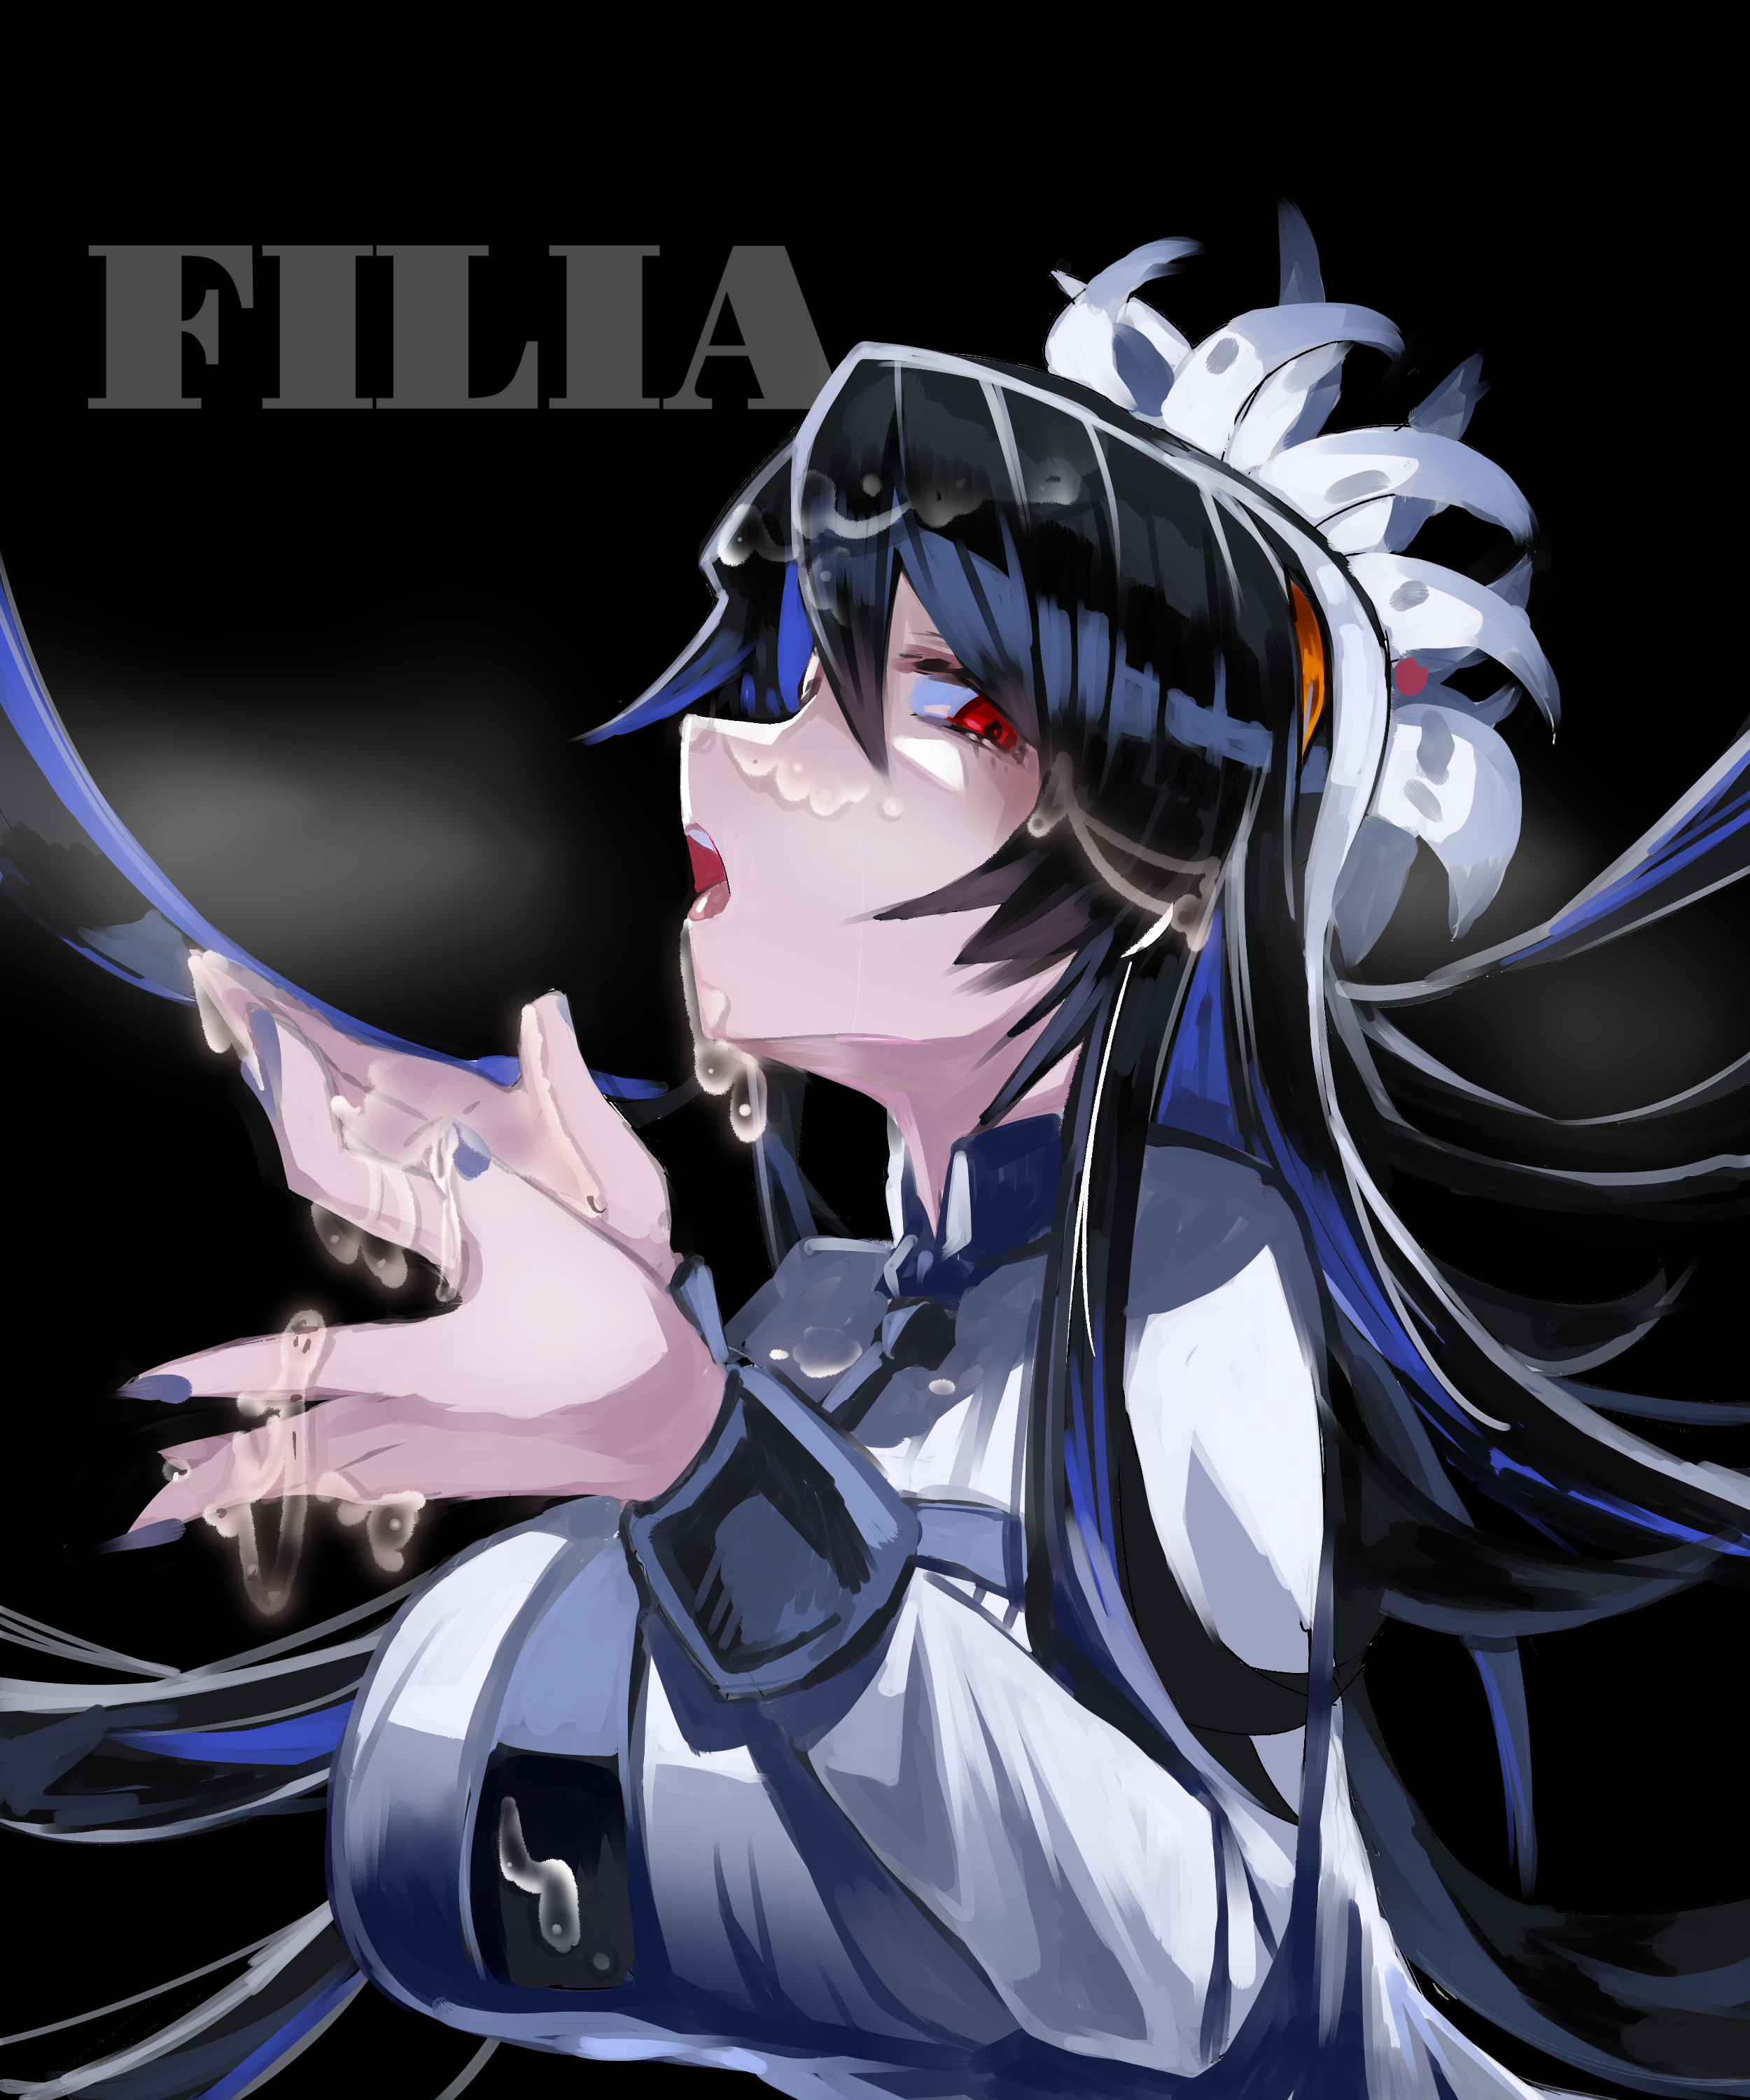 菲利亚-骷髅女孩フィリア